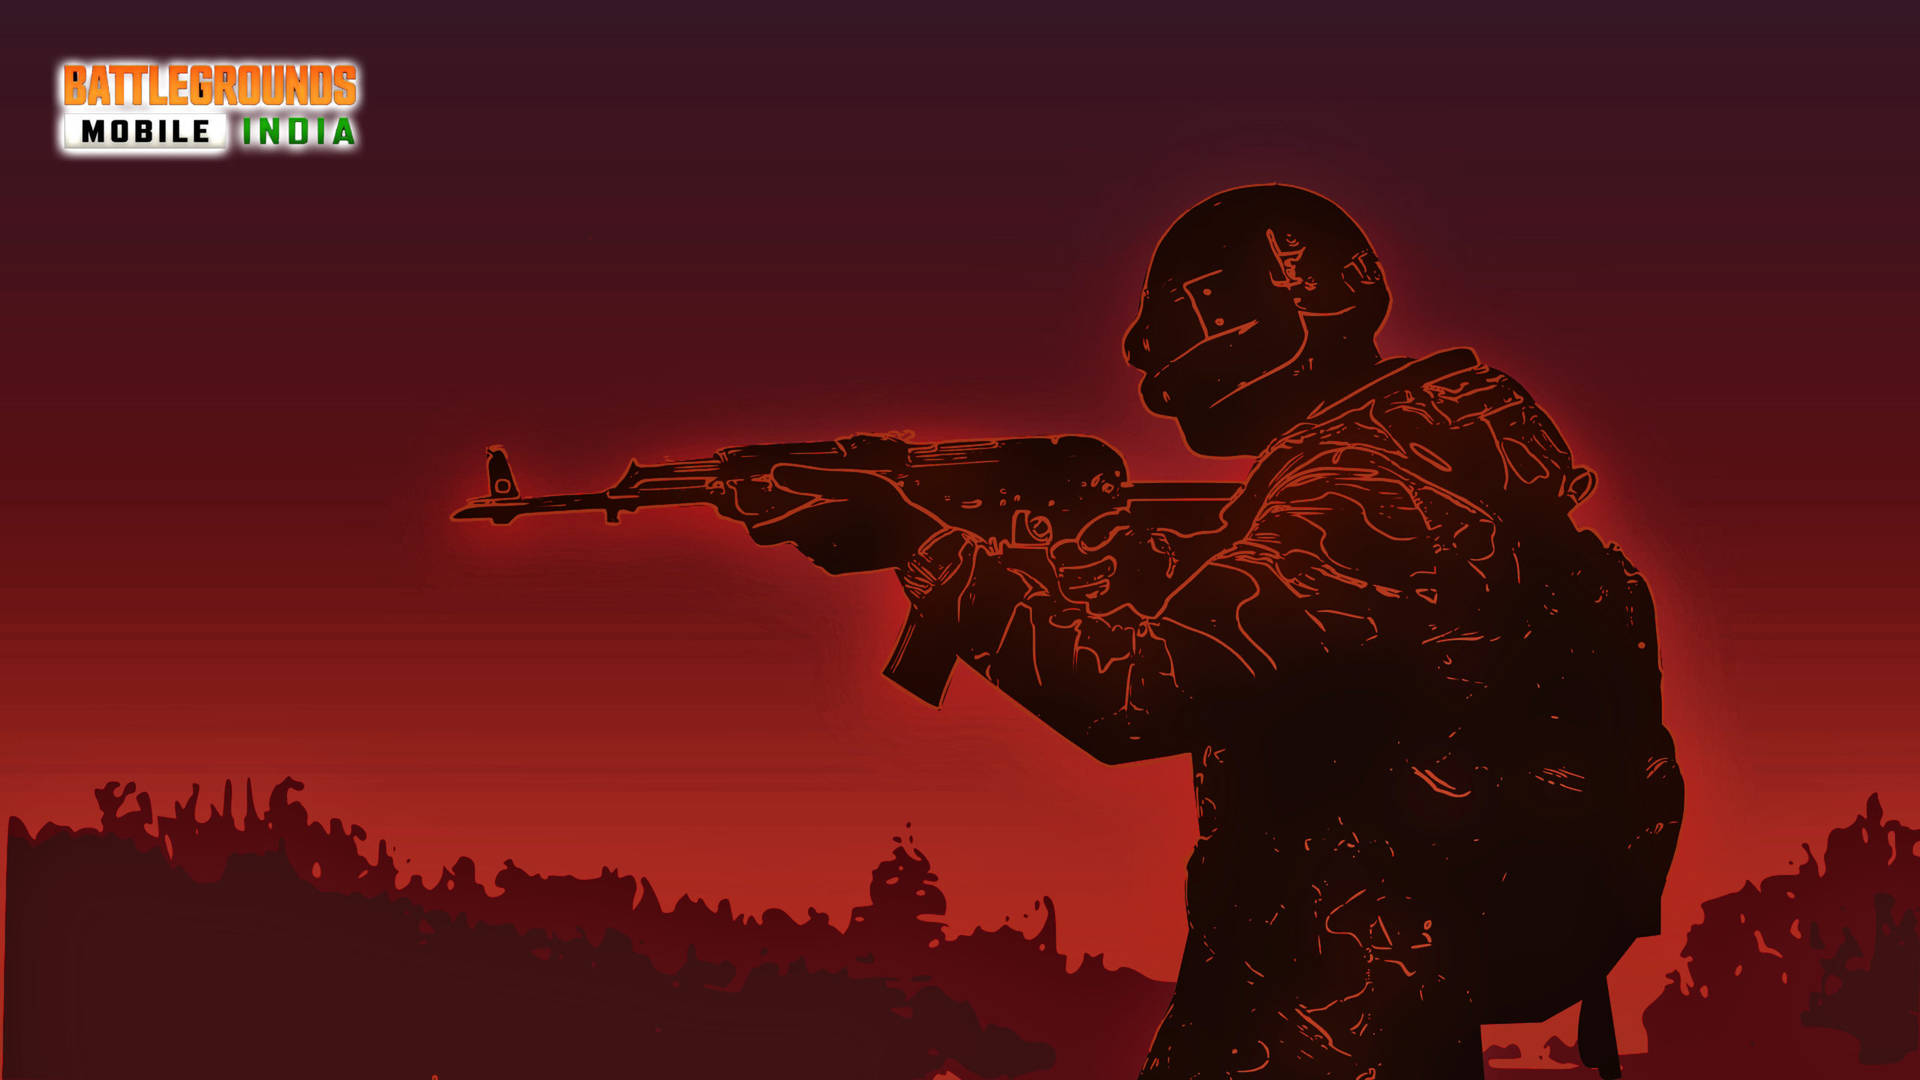 Battleground India Monochrome Red Soldier